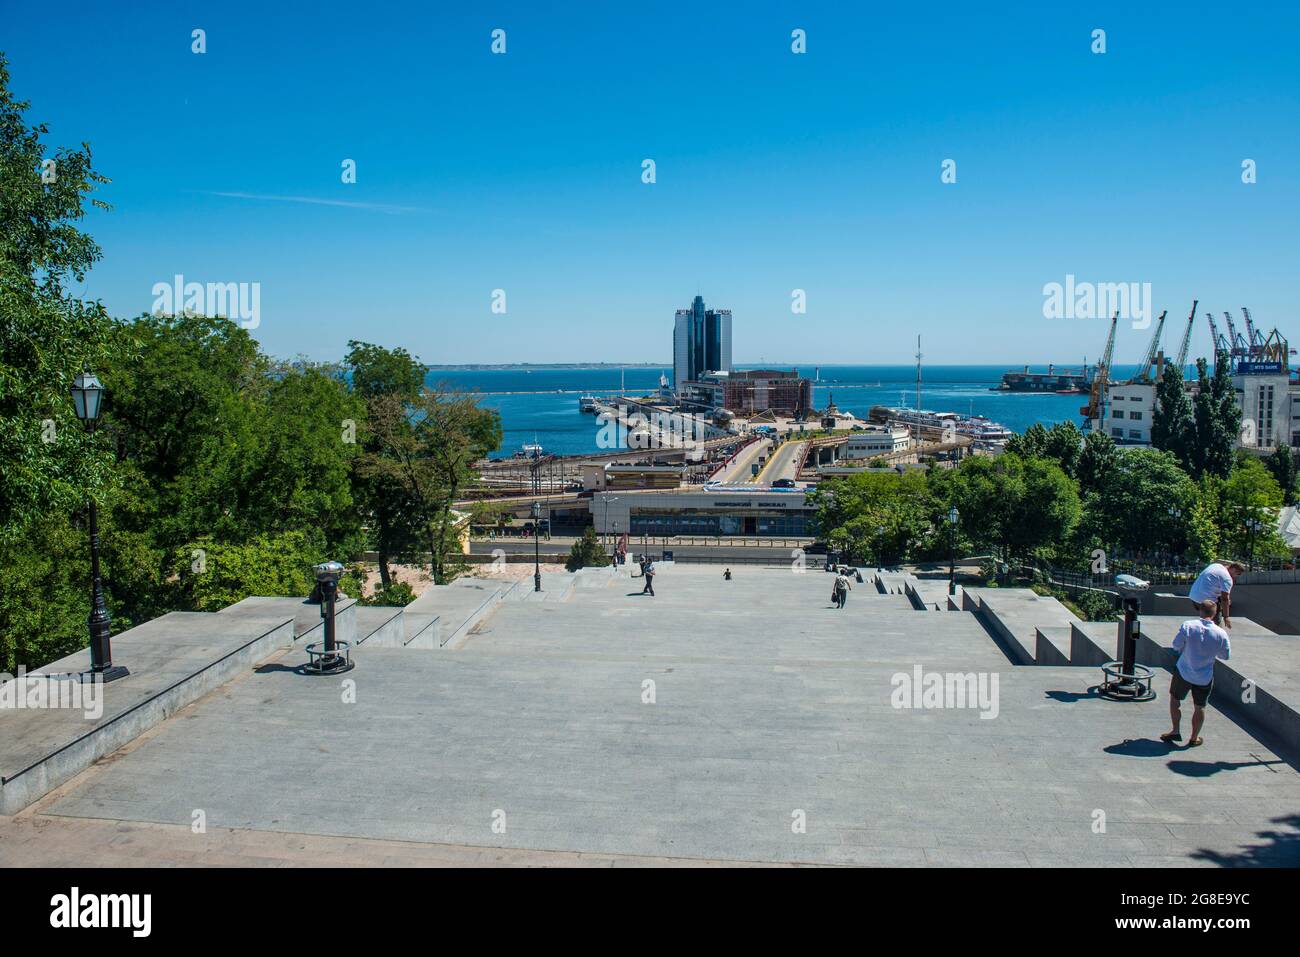 Potemkin Stairs, or Potemkin Steps, Odessa, Black sea, Ukraine Stock Photo